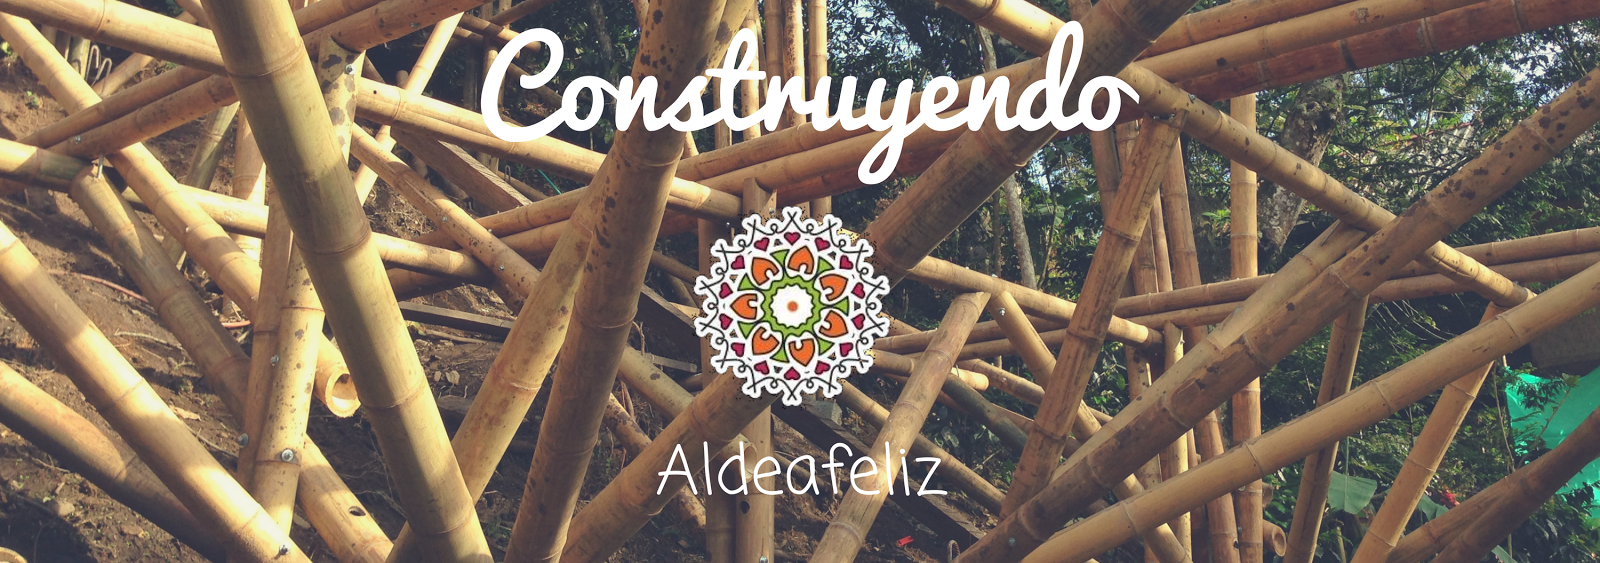 CONSTRUYENDO ALDEAFELIZ, Building an Ecovillage 